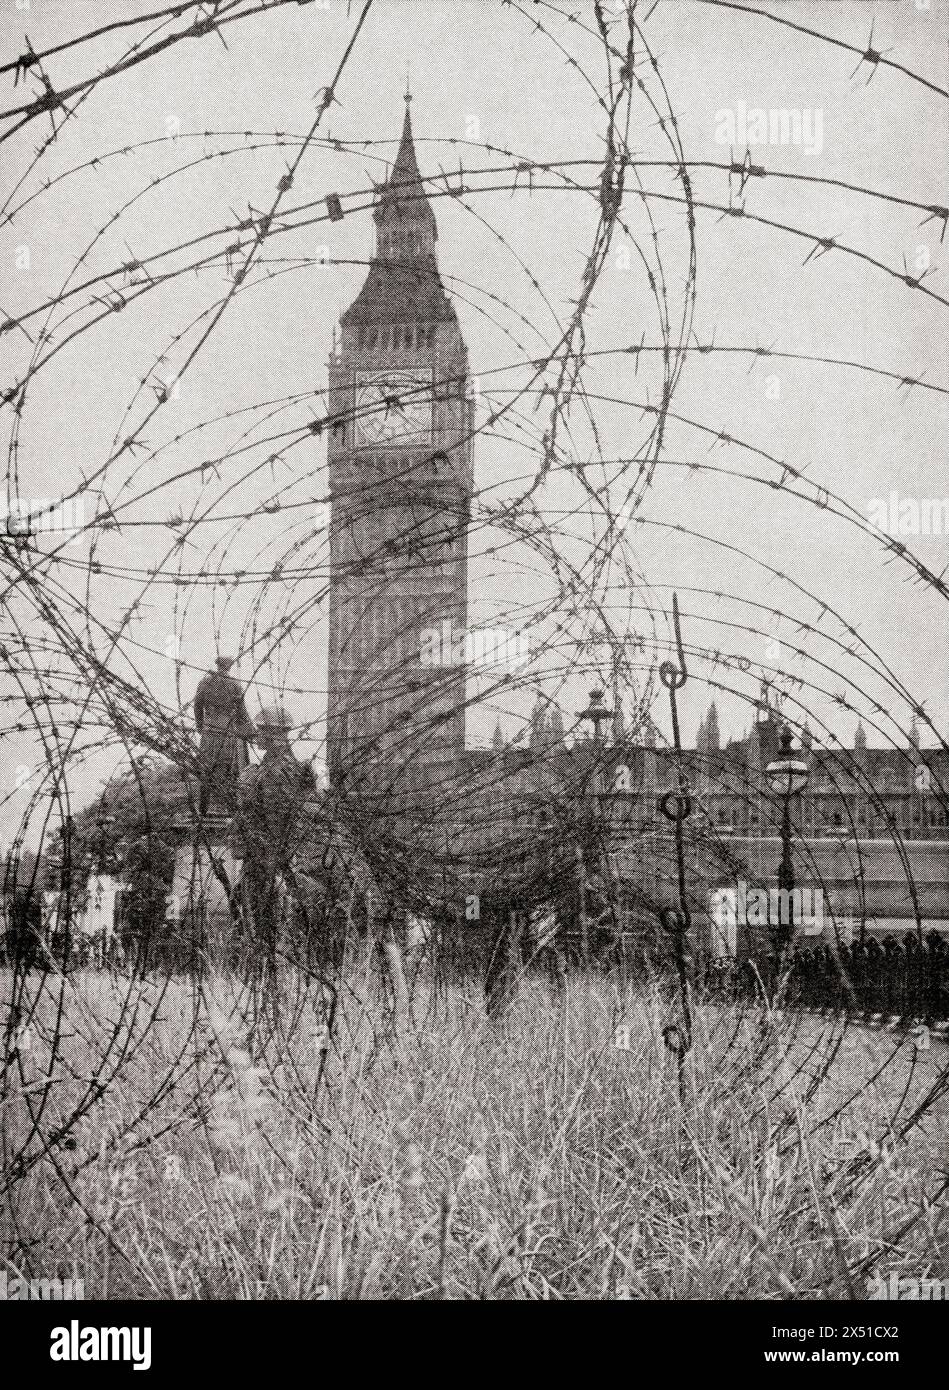 Großbritannien bereitet sich auf Invasion vor. Stacheldraht-Verstrickungen an strategischen Stellen, 1940. Aus dem Krieg in Bildern, 1. Jahr. Stockfoto